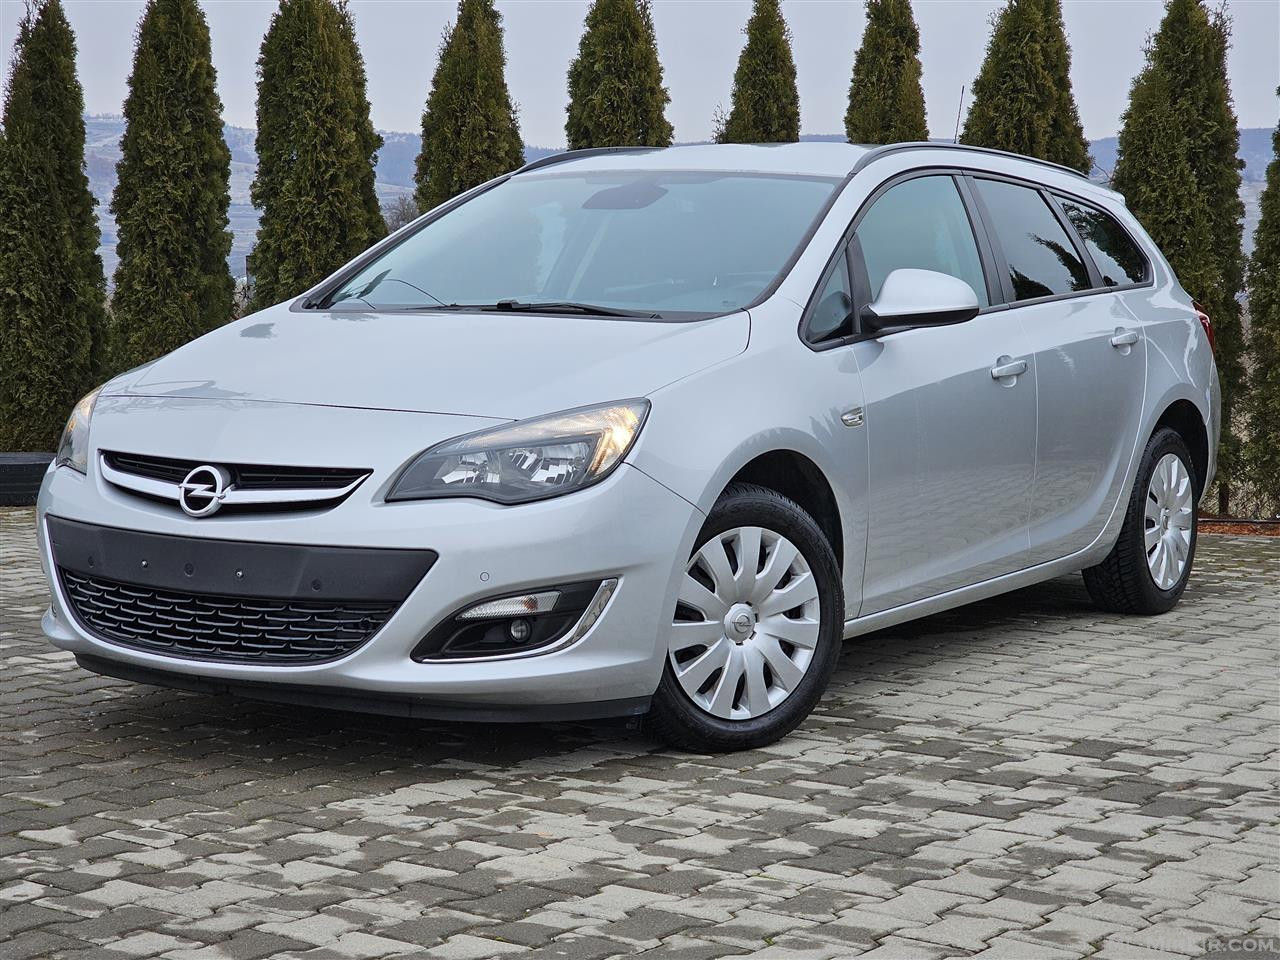  Opel Astra J - E sapo doganuar ??